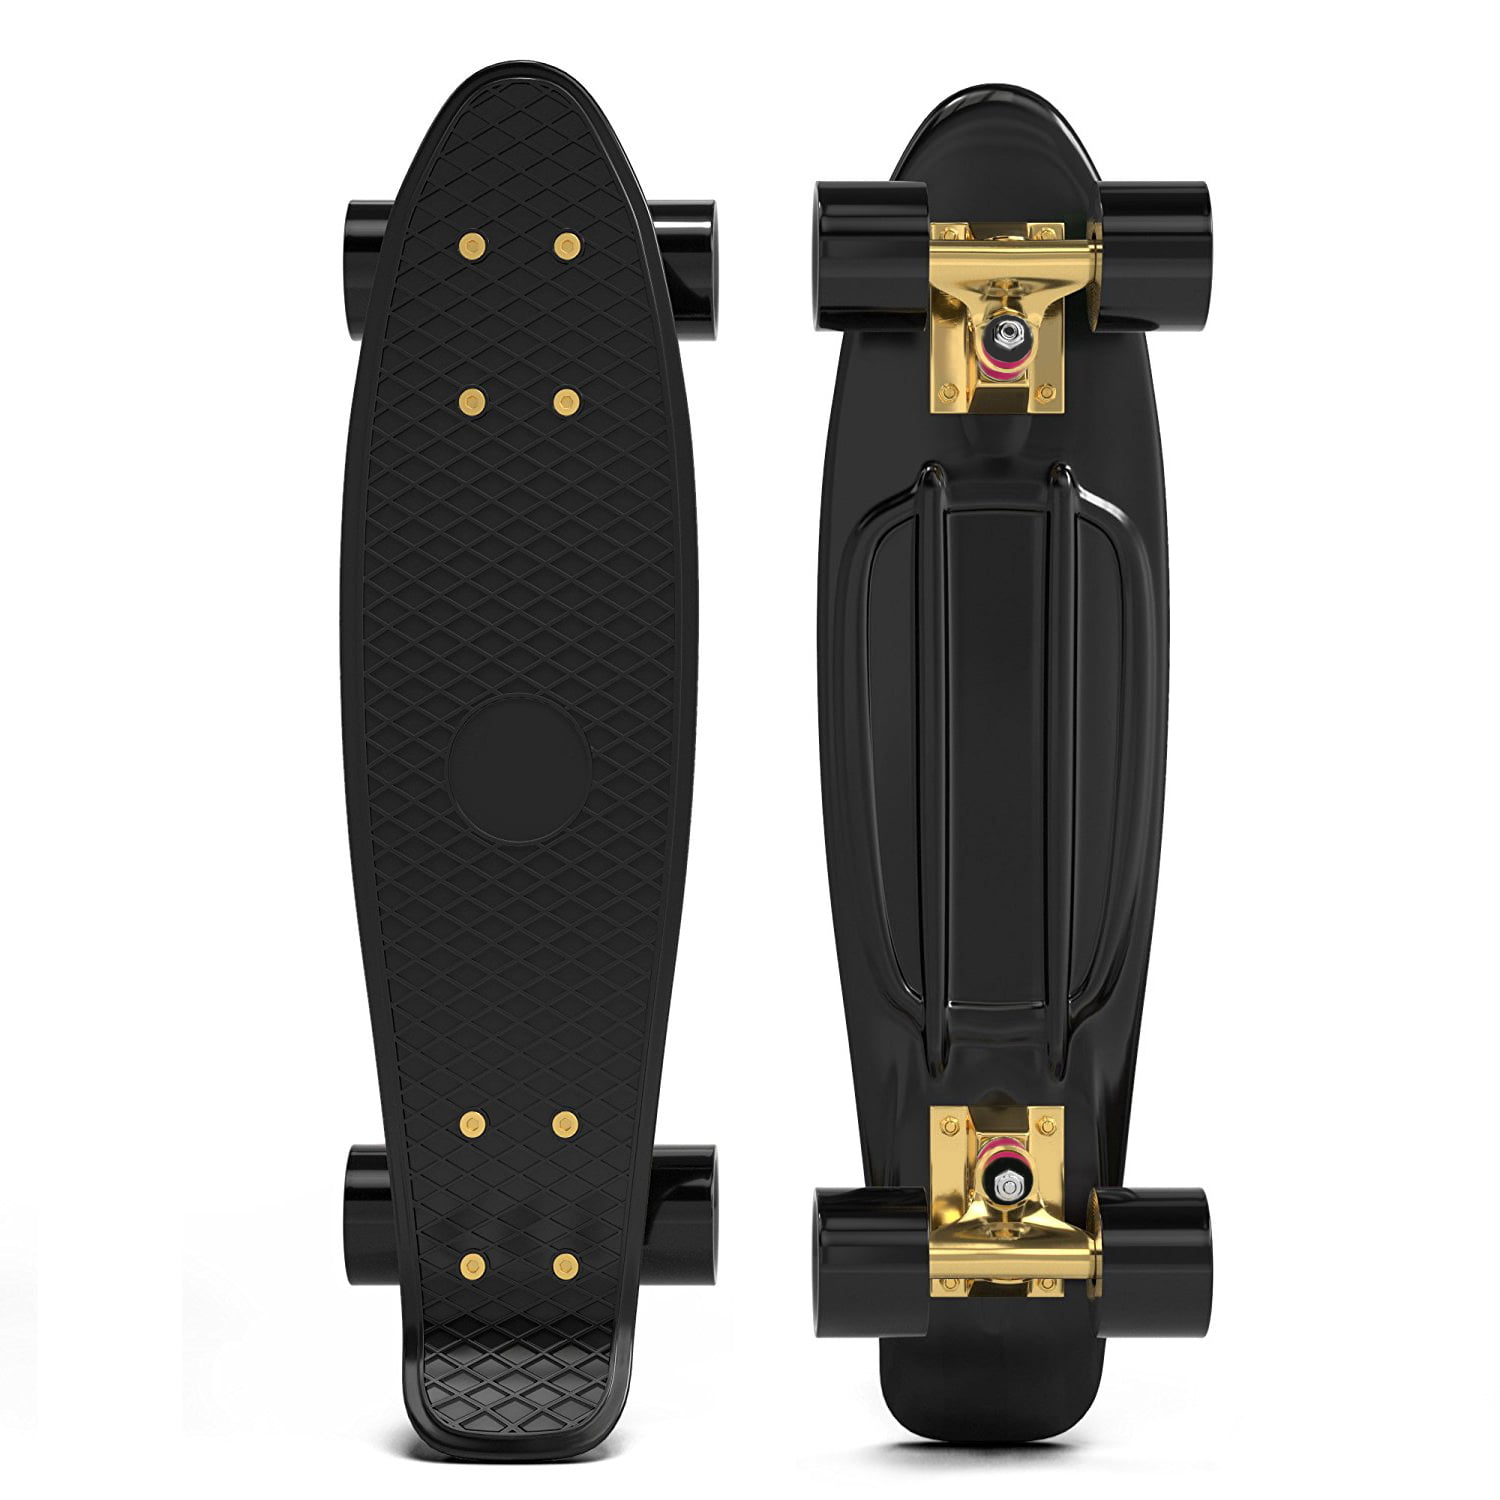 Skateboard Funboard Miniboard Penny Kinder Board Cruiser 22“ deck Komplett 